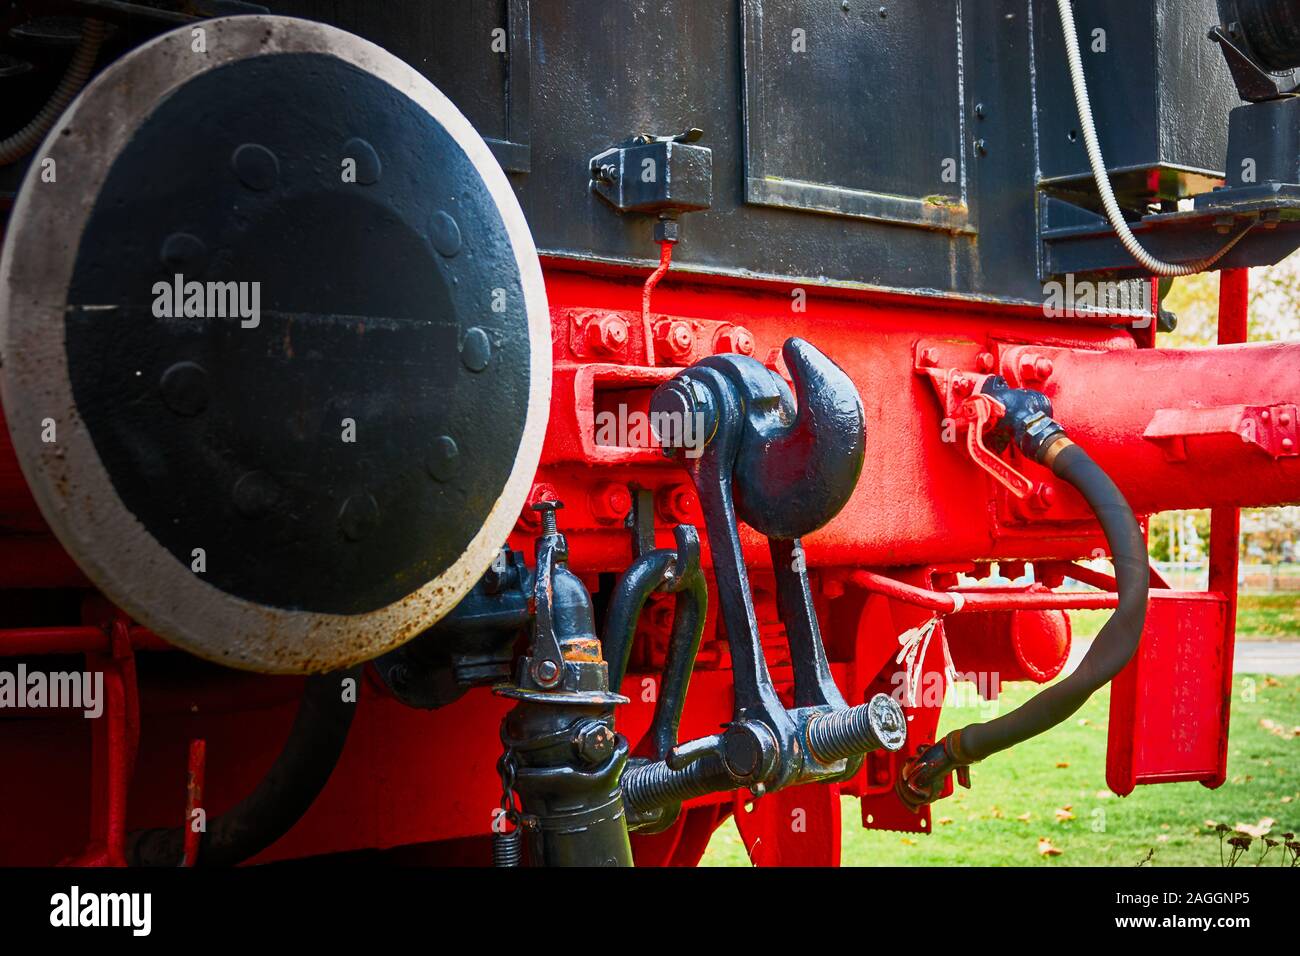 Detaillierte Ansicht der Rückseite einer historischen Lokomotive mit dem Haken zur Befestigung von Waggons Stockfoto